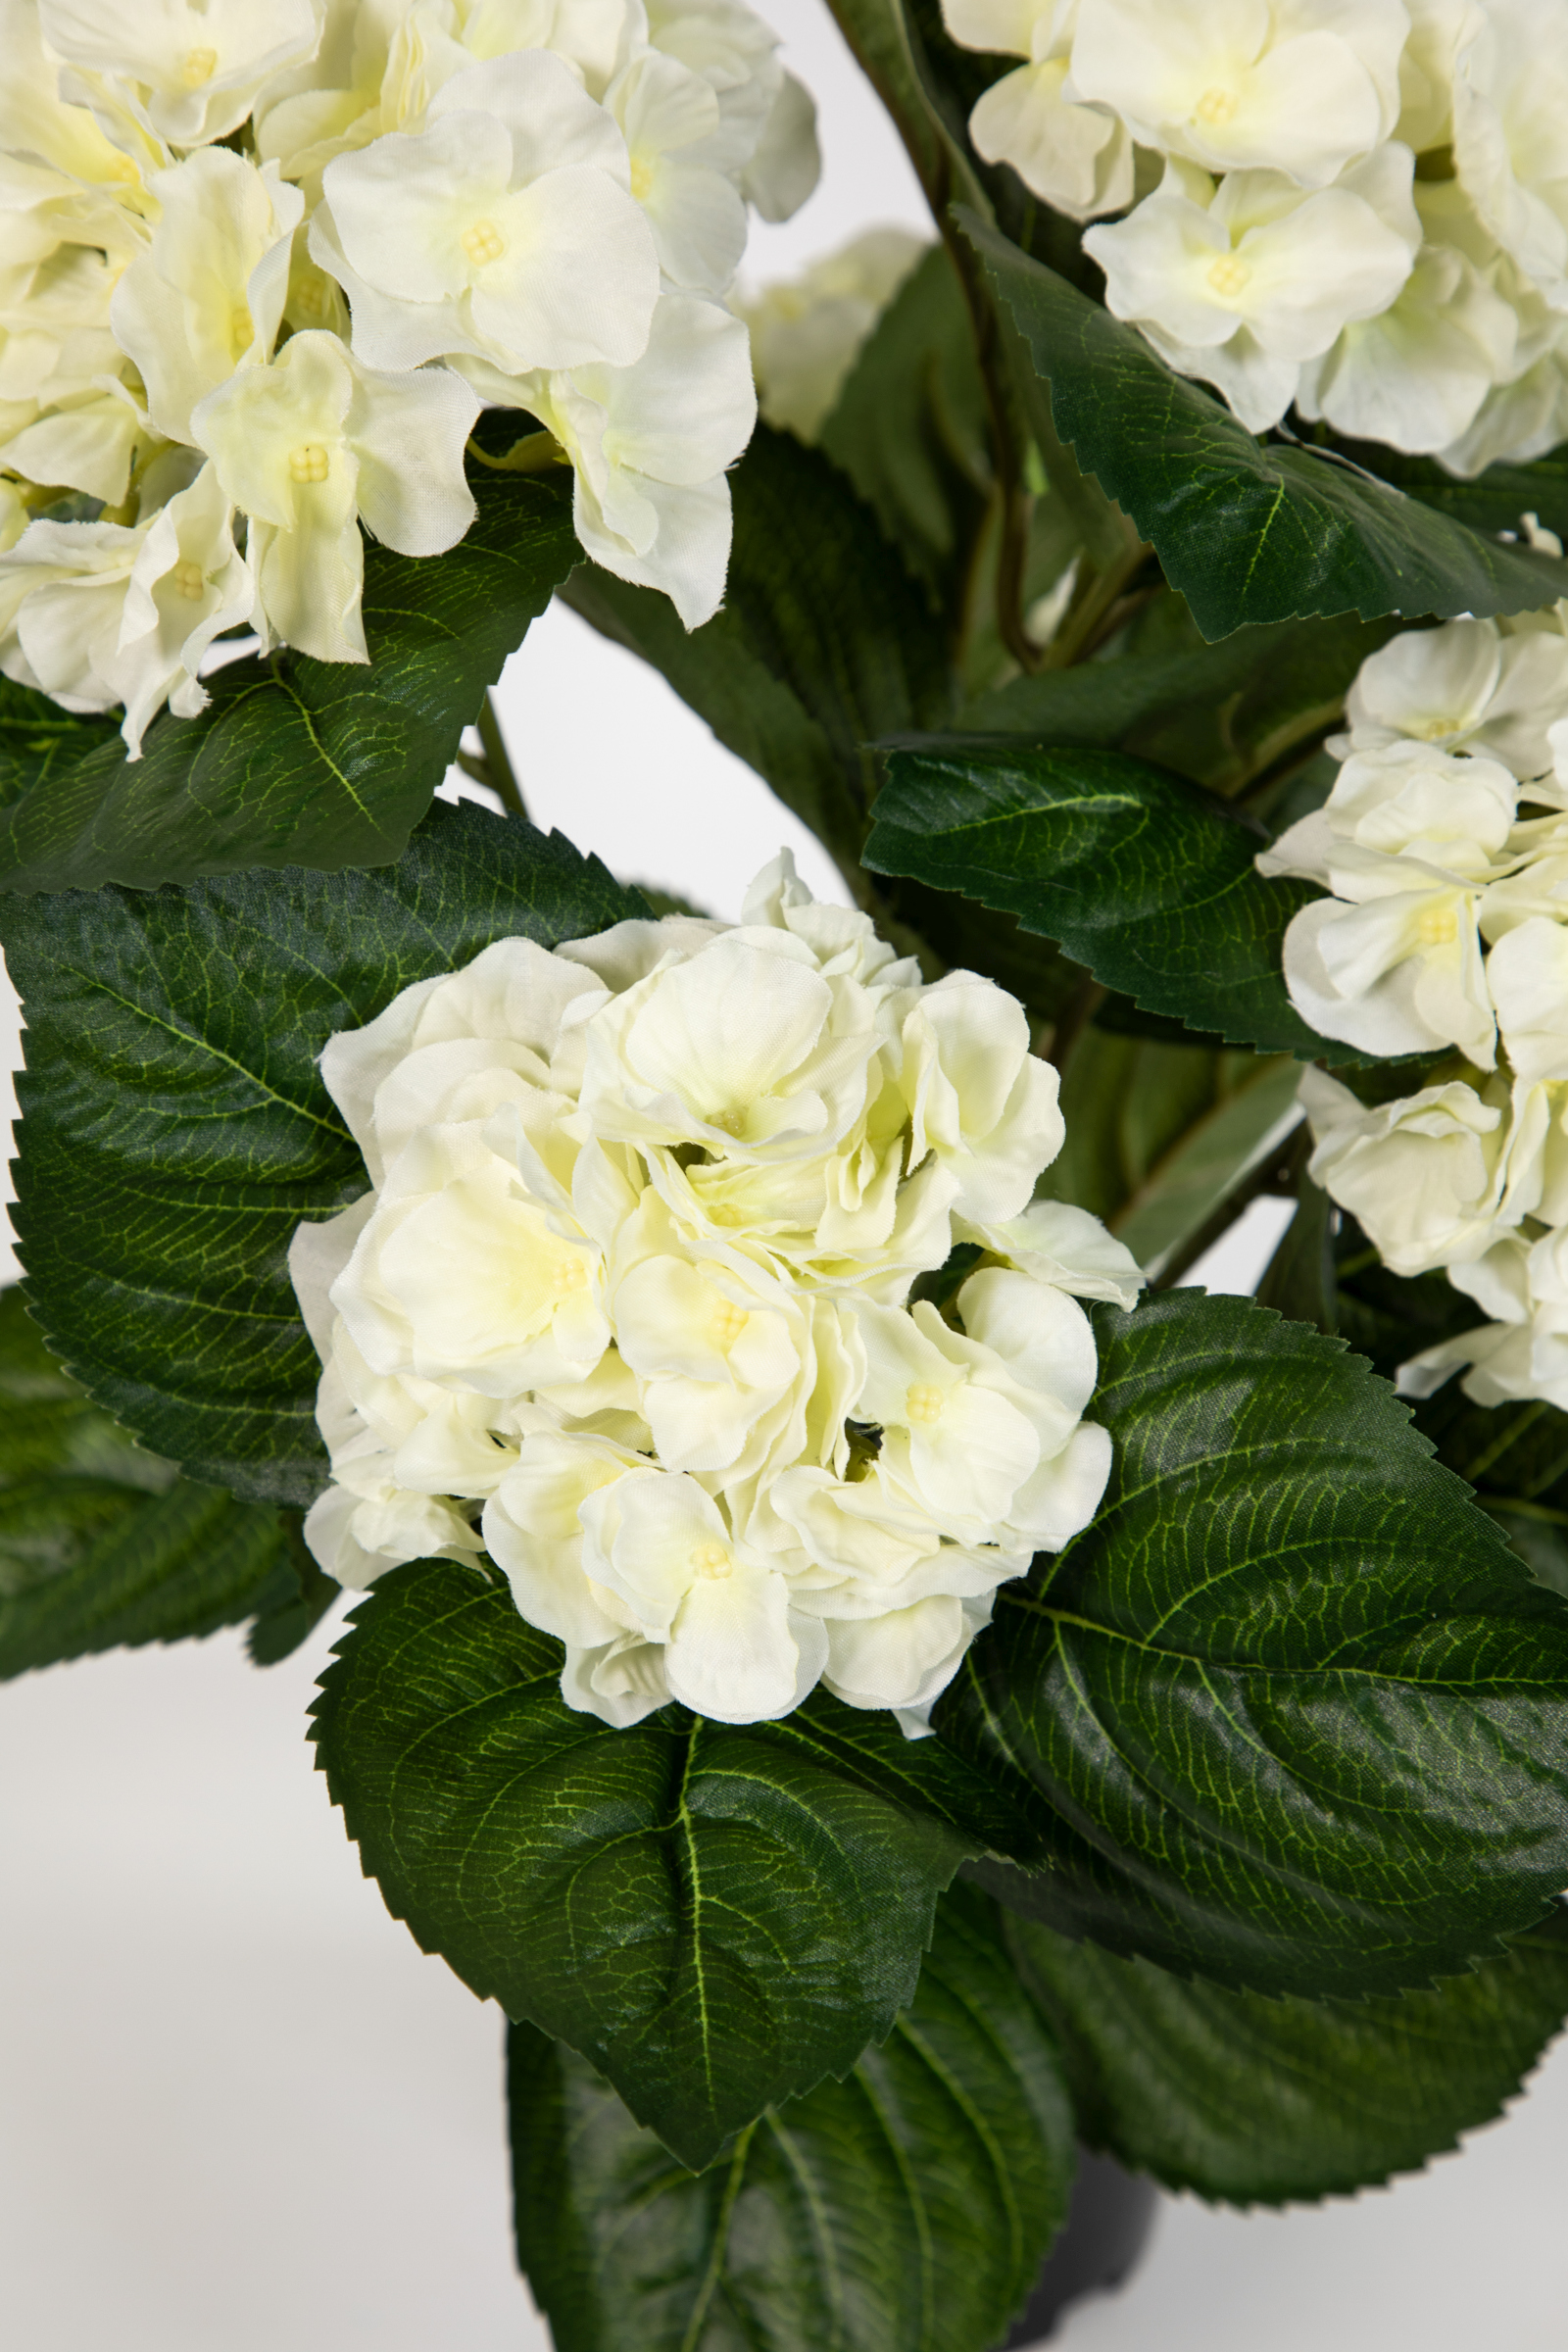 LM Blumen 42cm Pflanzen Hortensie Topf künstliche Deluxe Kunstpflanzen weiß-creme im Hortensienbusch